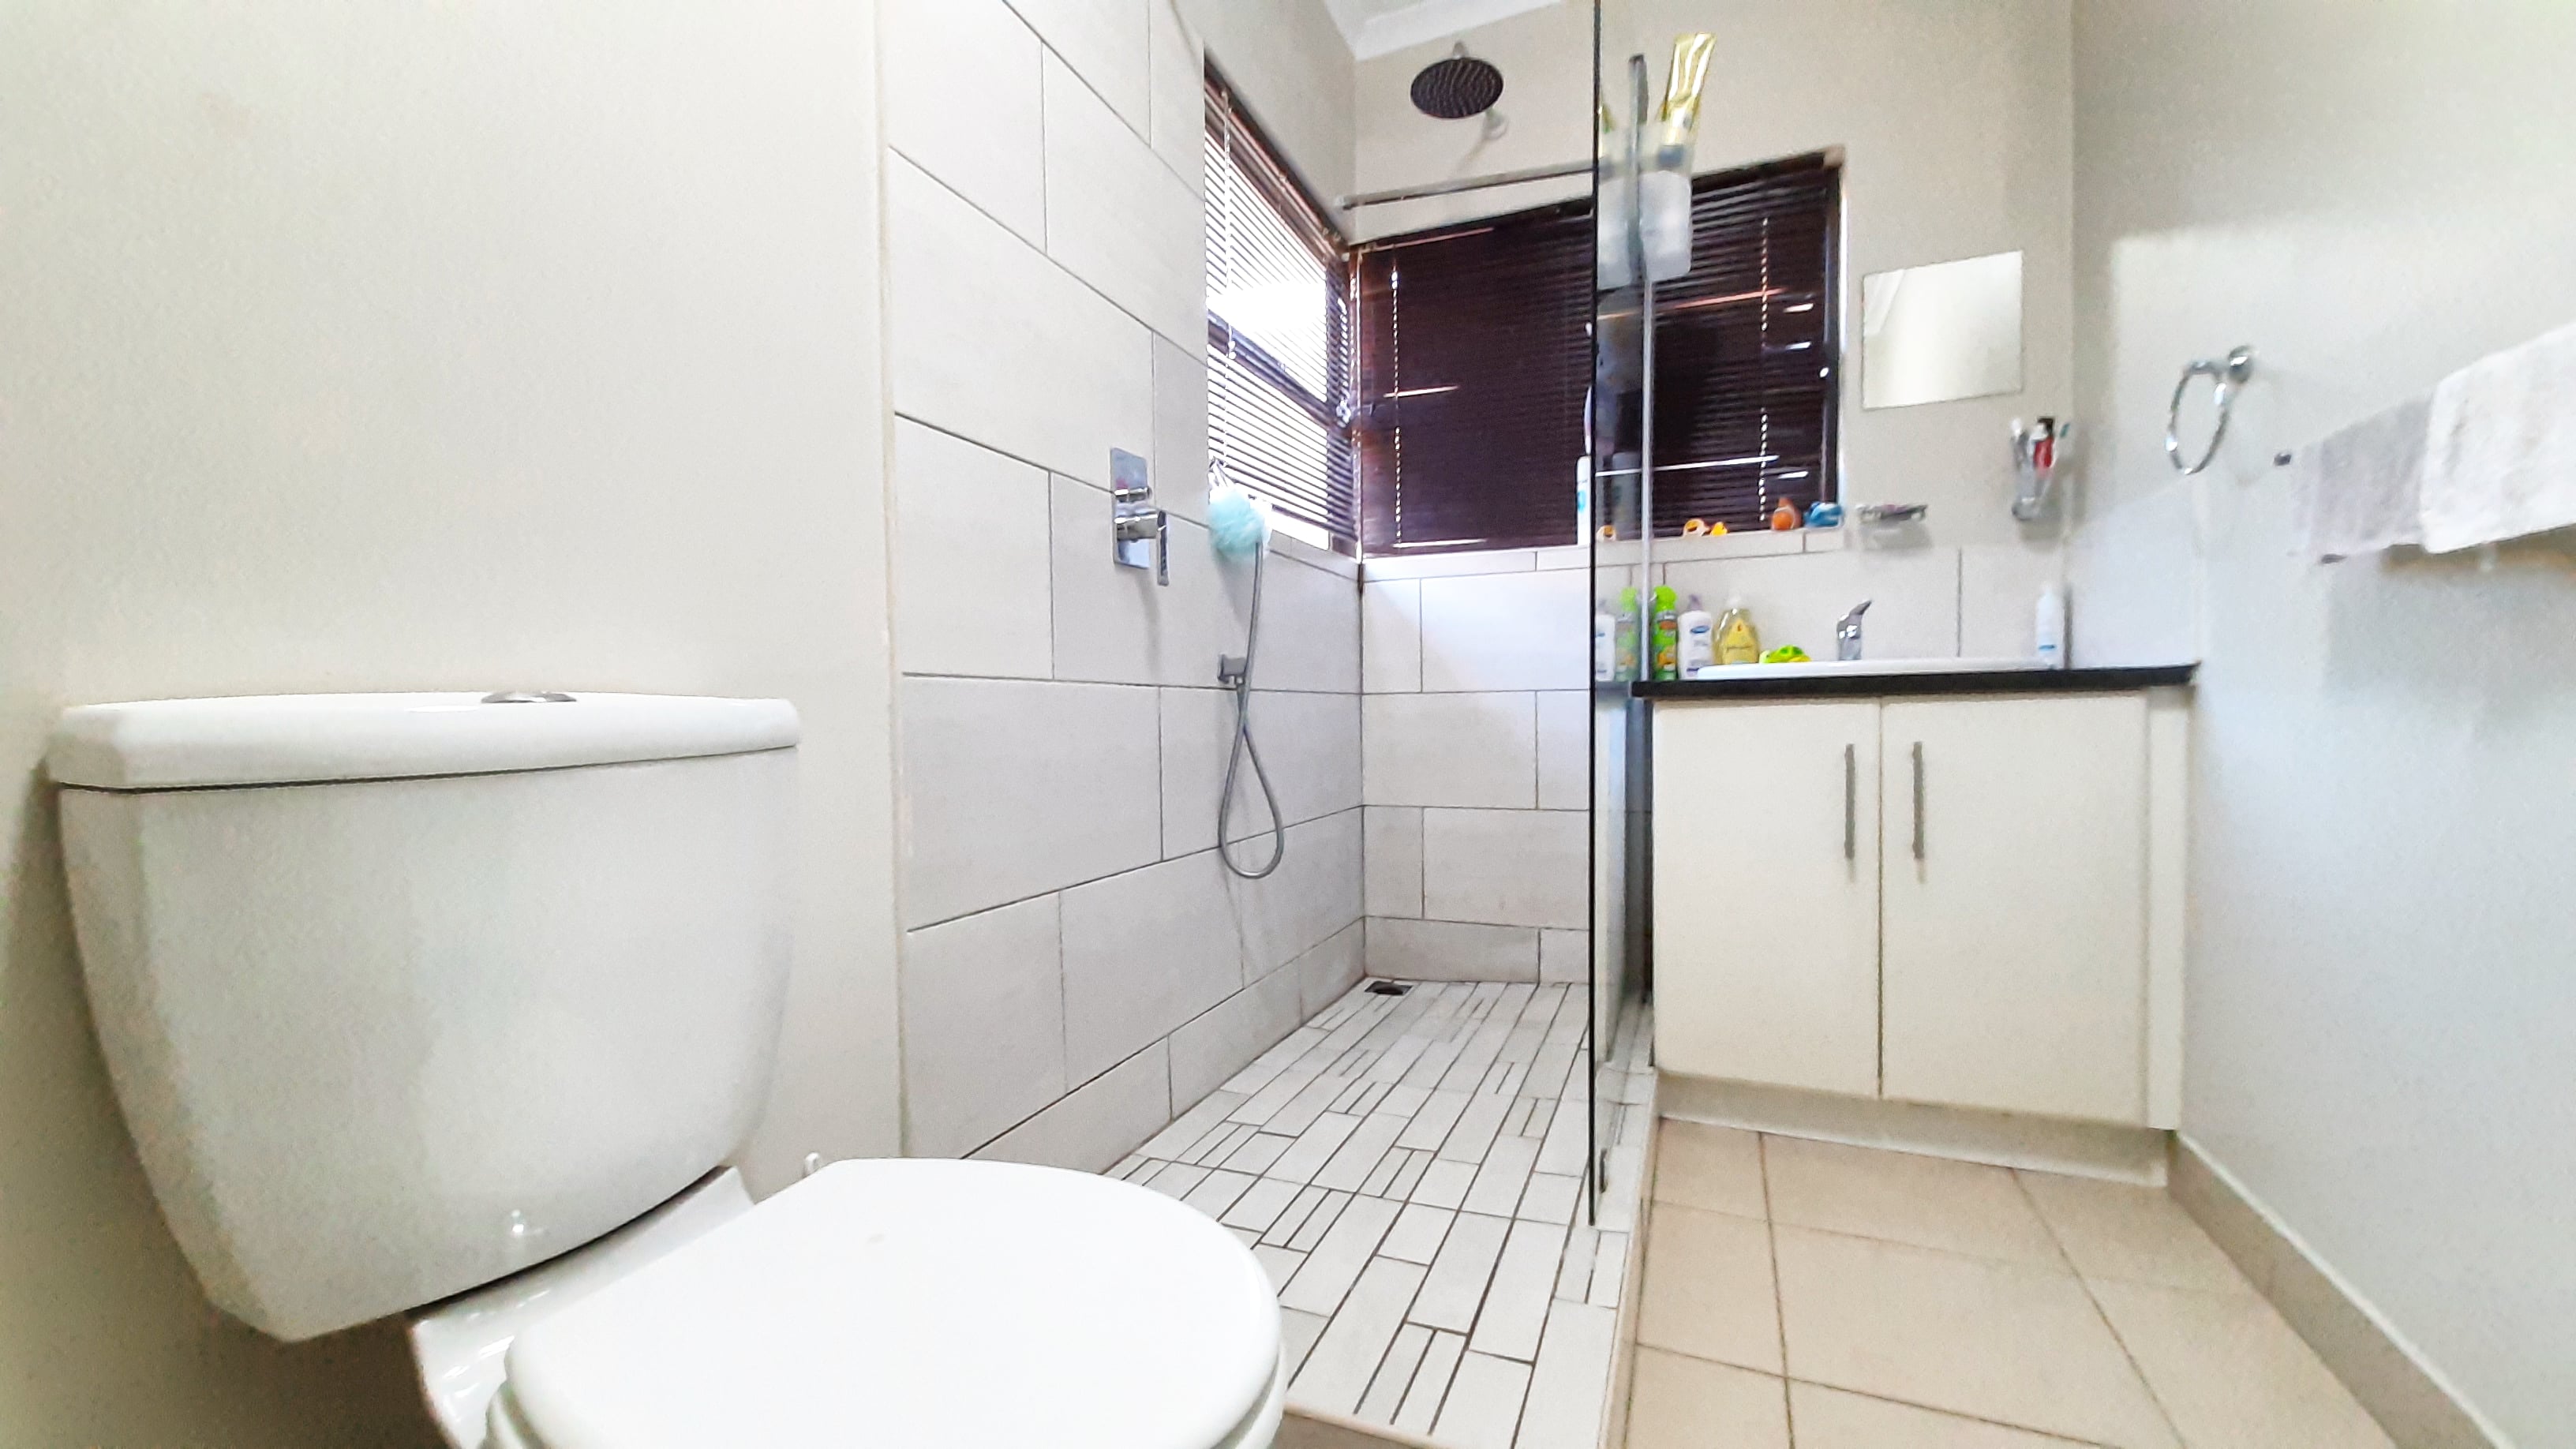 3 Bedroom Property for Sale in Hilltop Private Estate KwaZulu-Natal